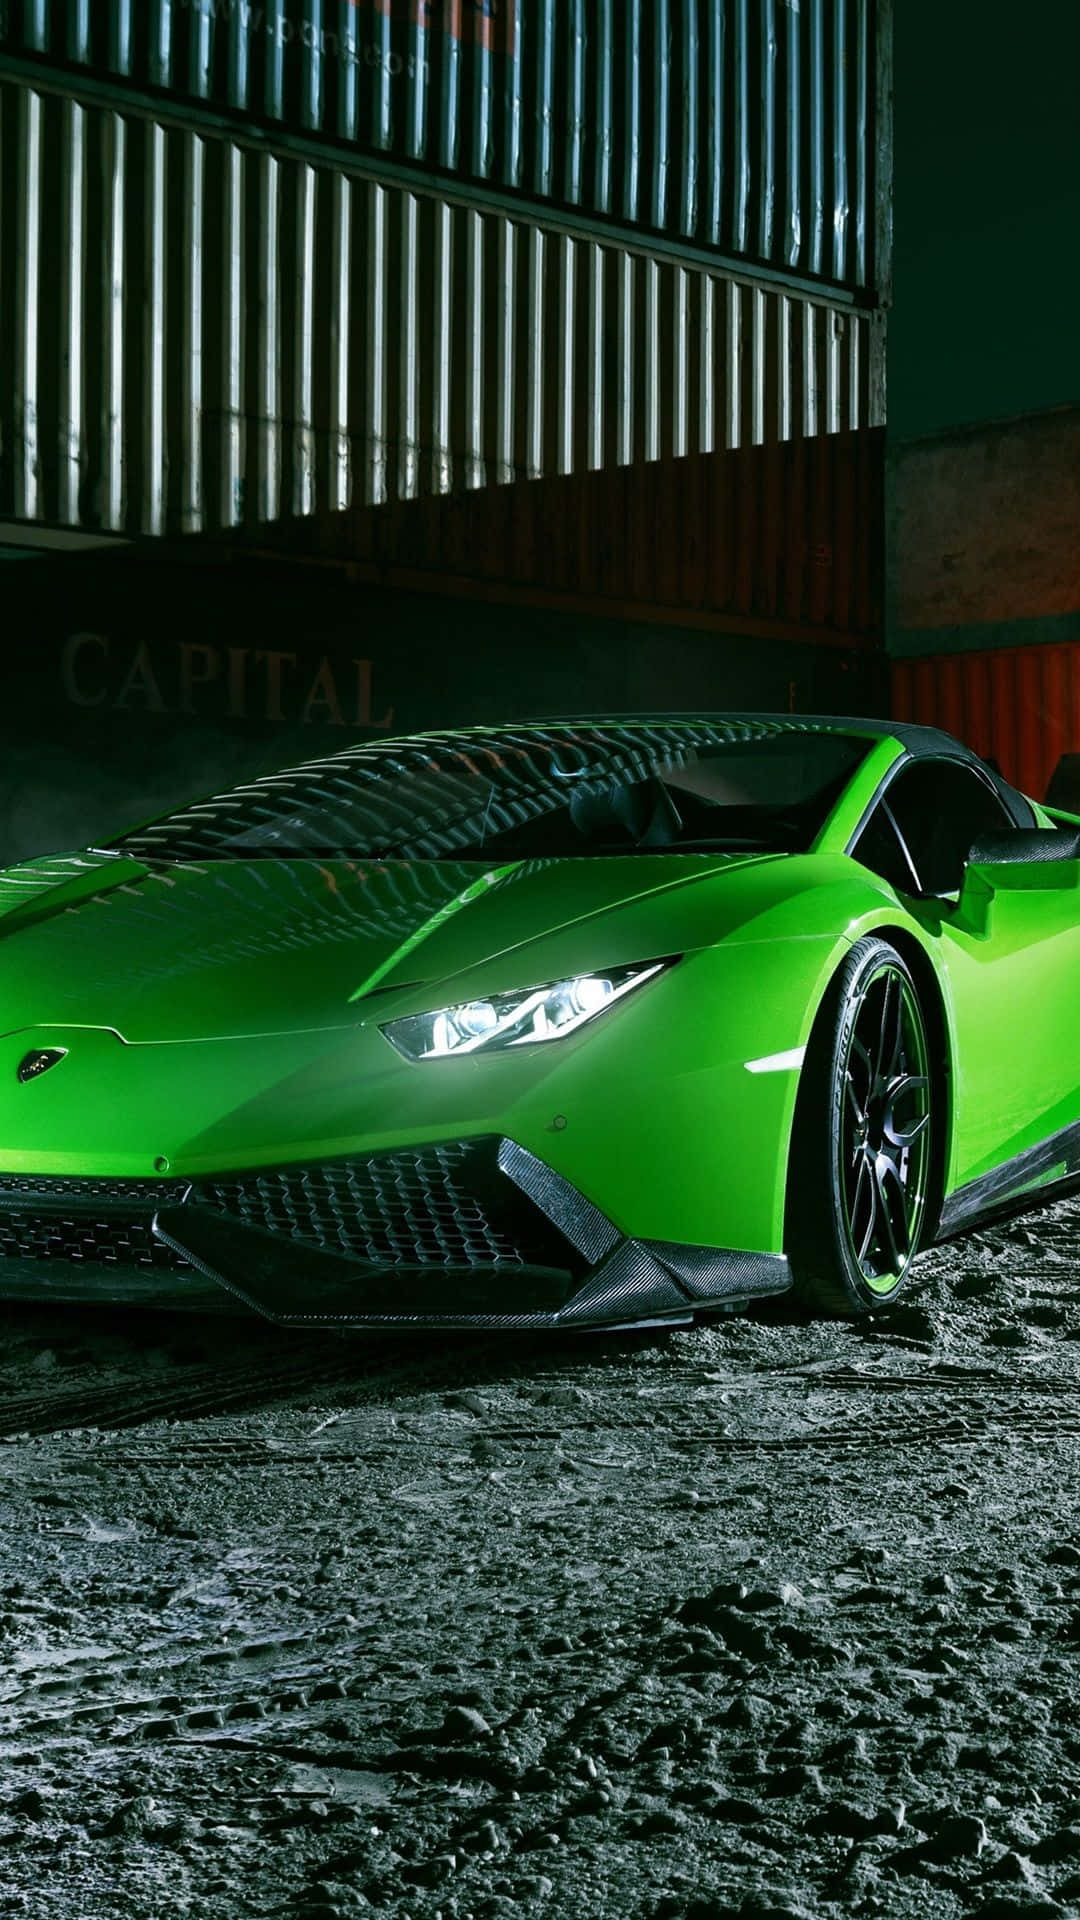 Oplev klassen og hastigheden fra en grøn Lamborghini. Wallpaper